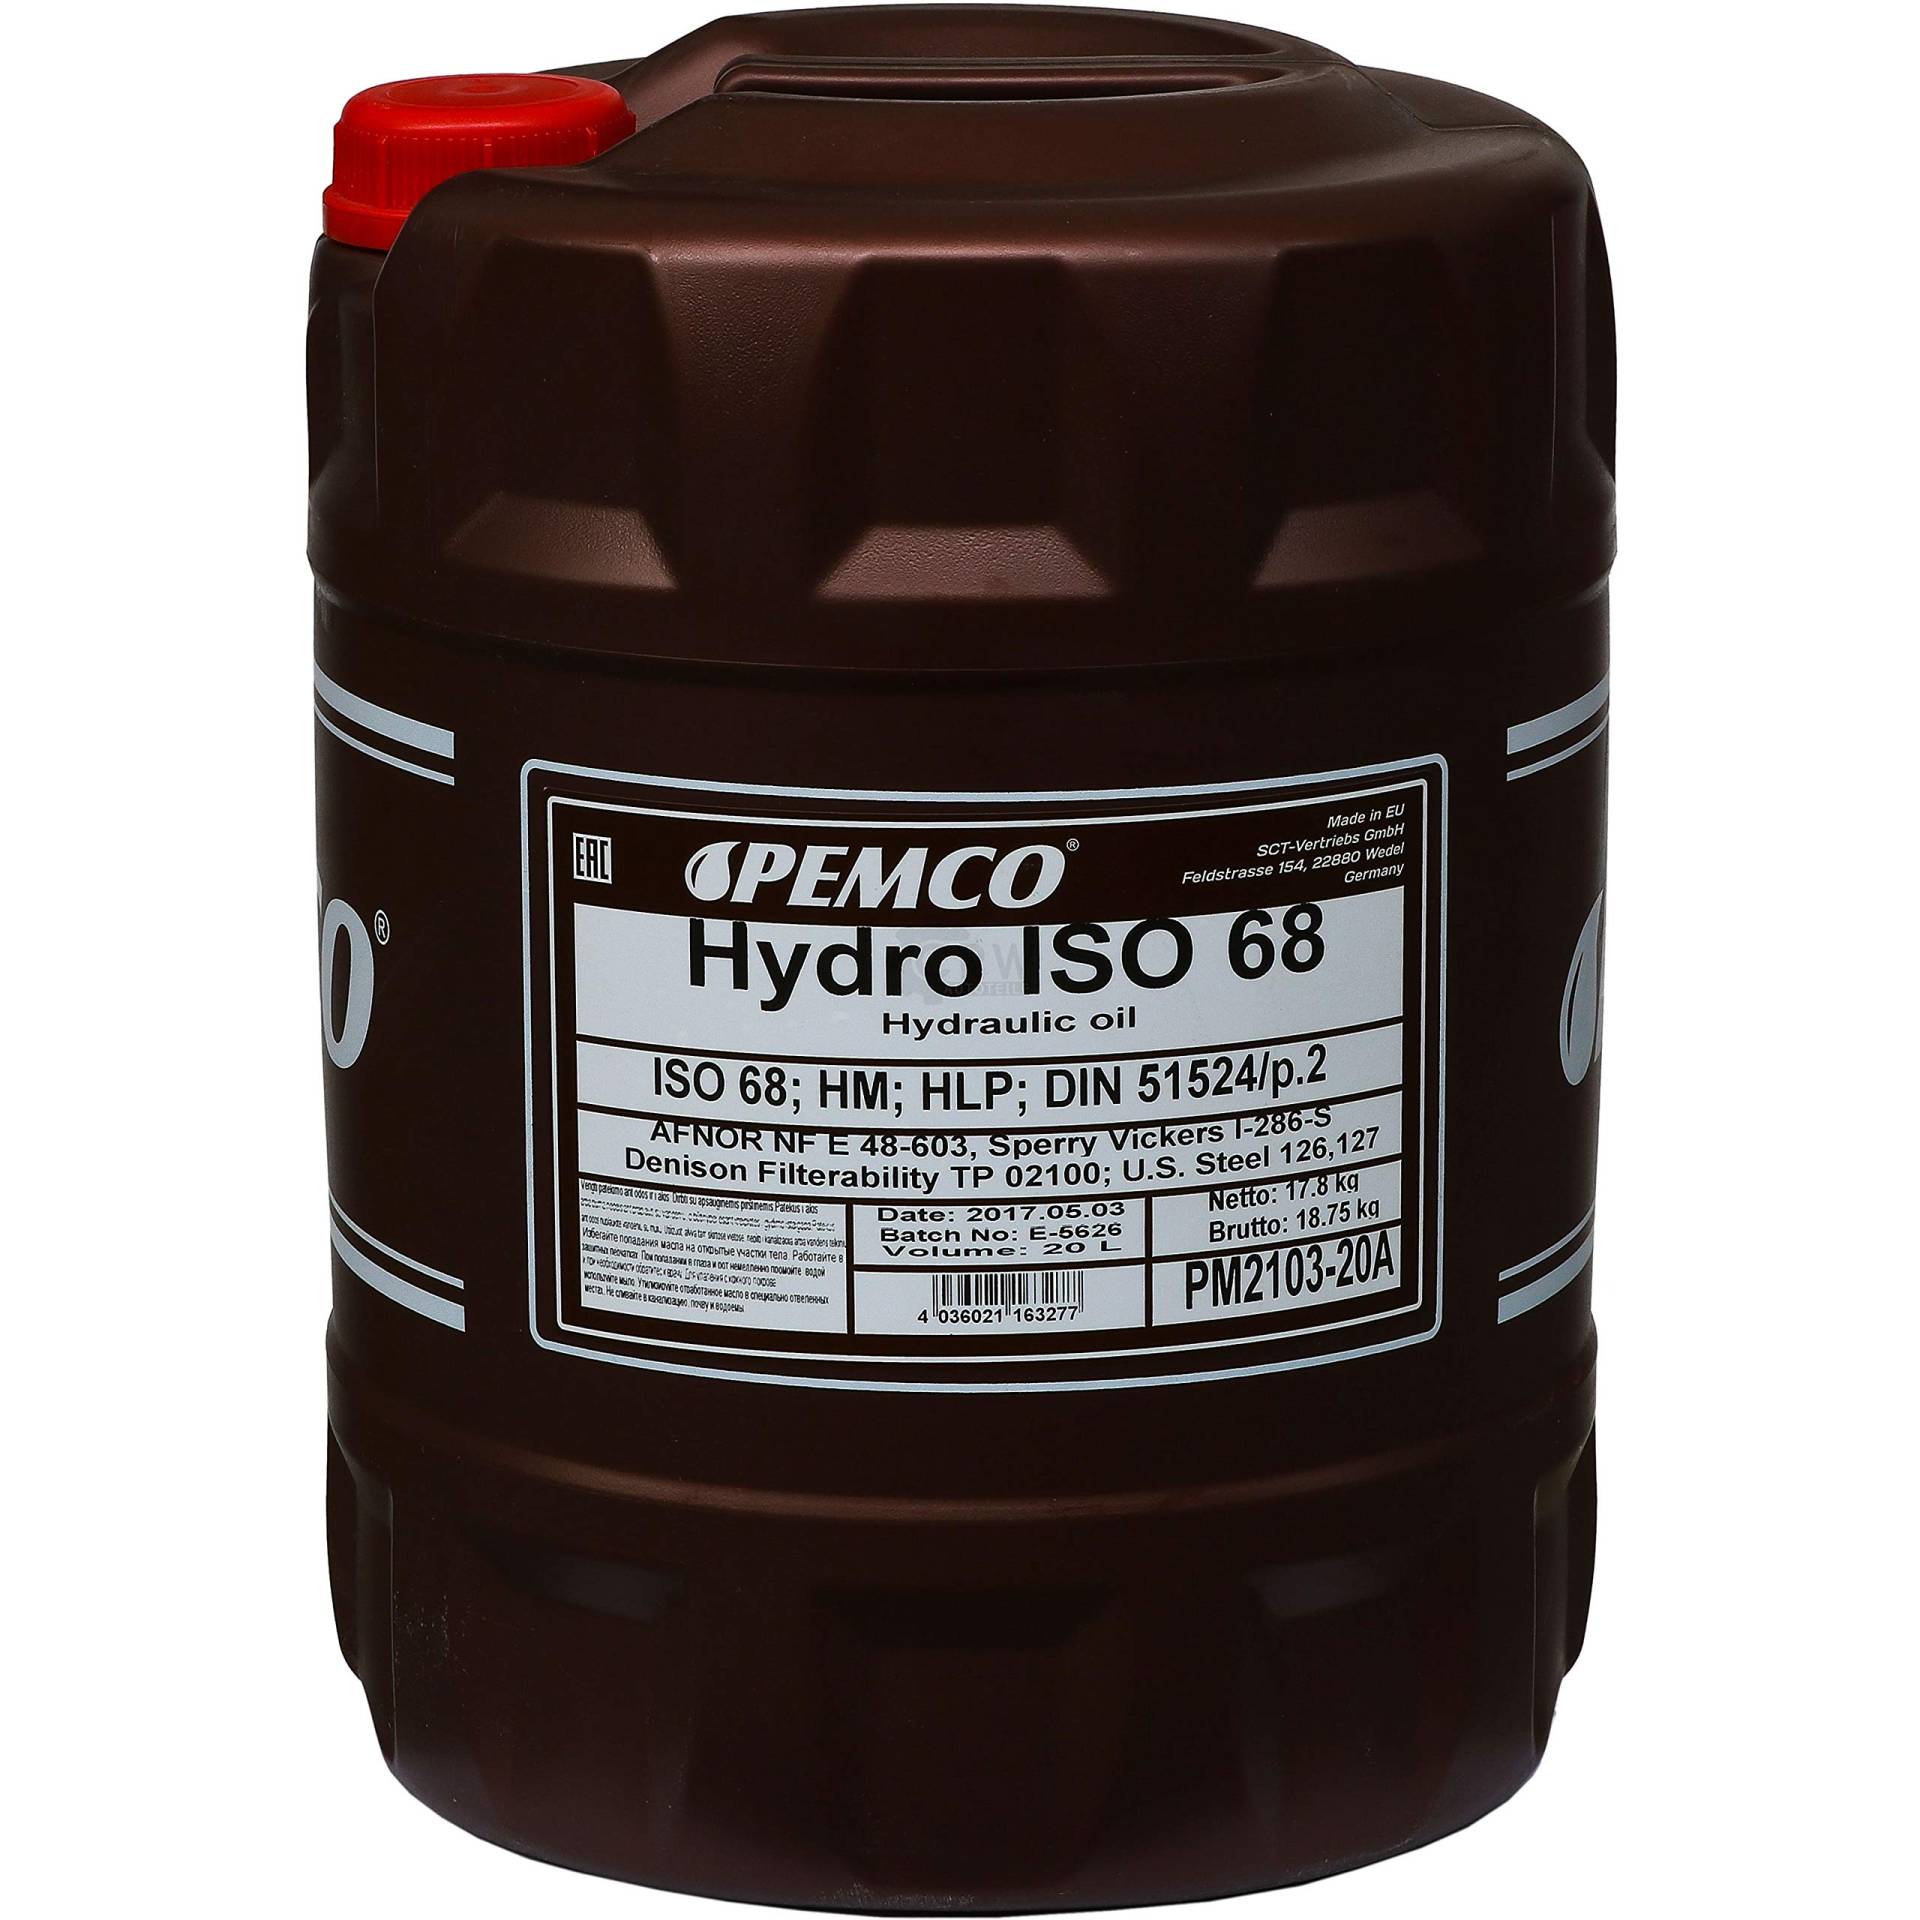 Sct - Mannol PM2103-20 - Hydrauliköl von Pemco